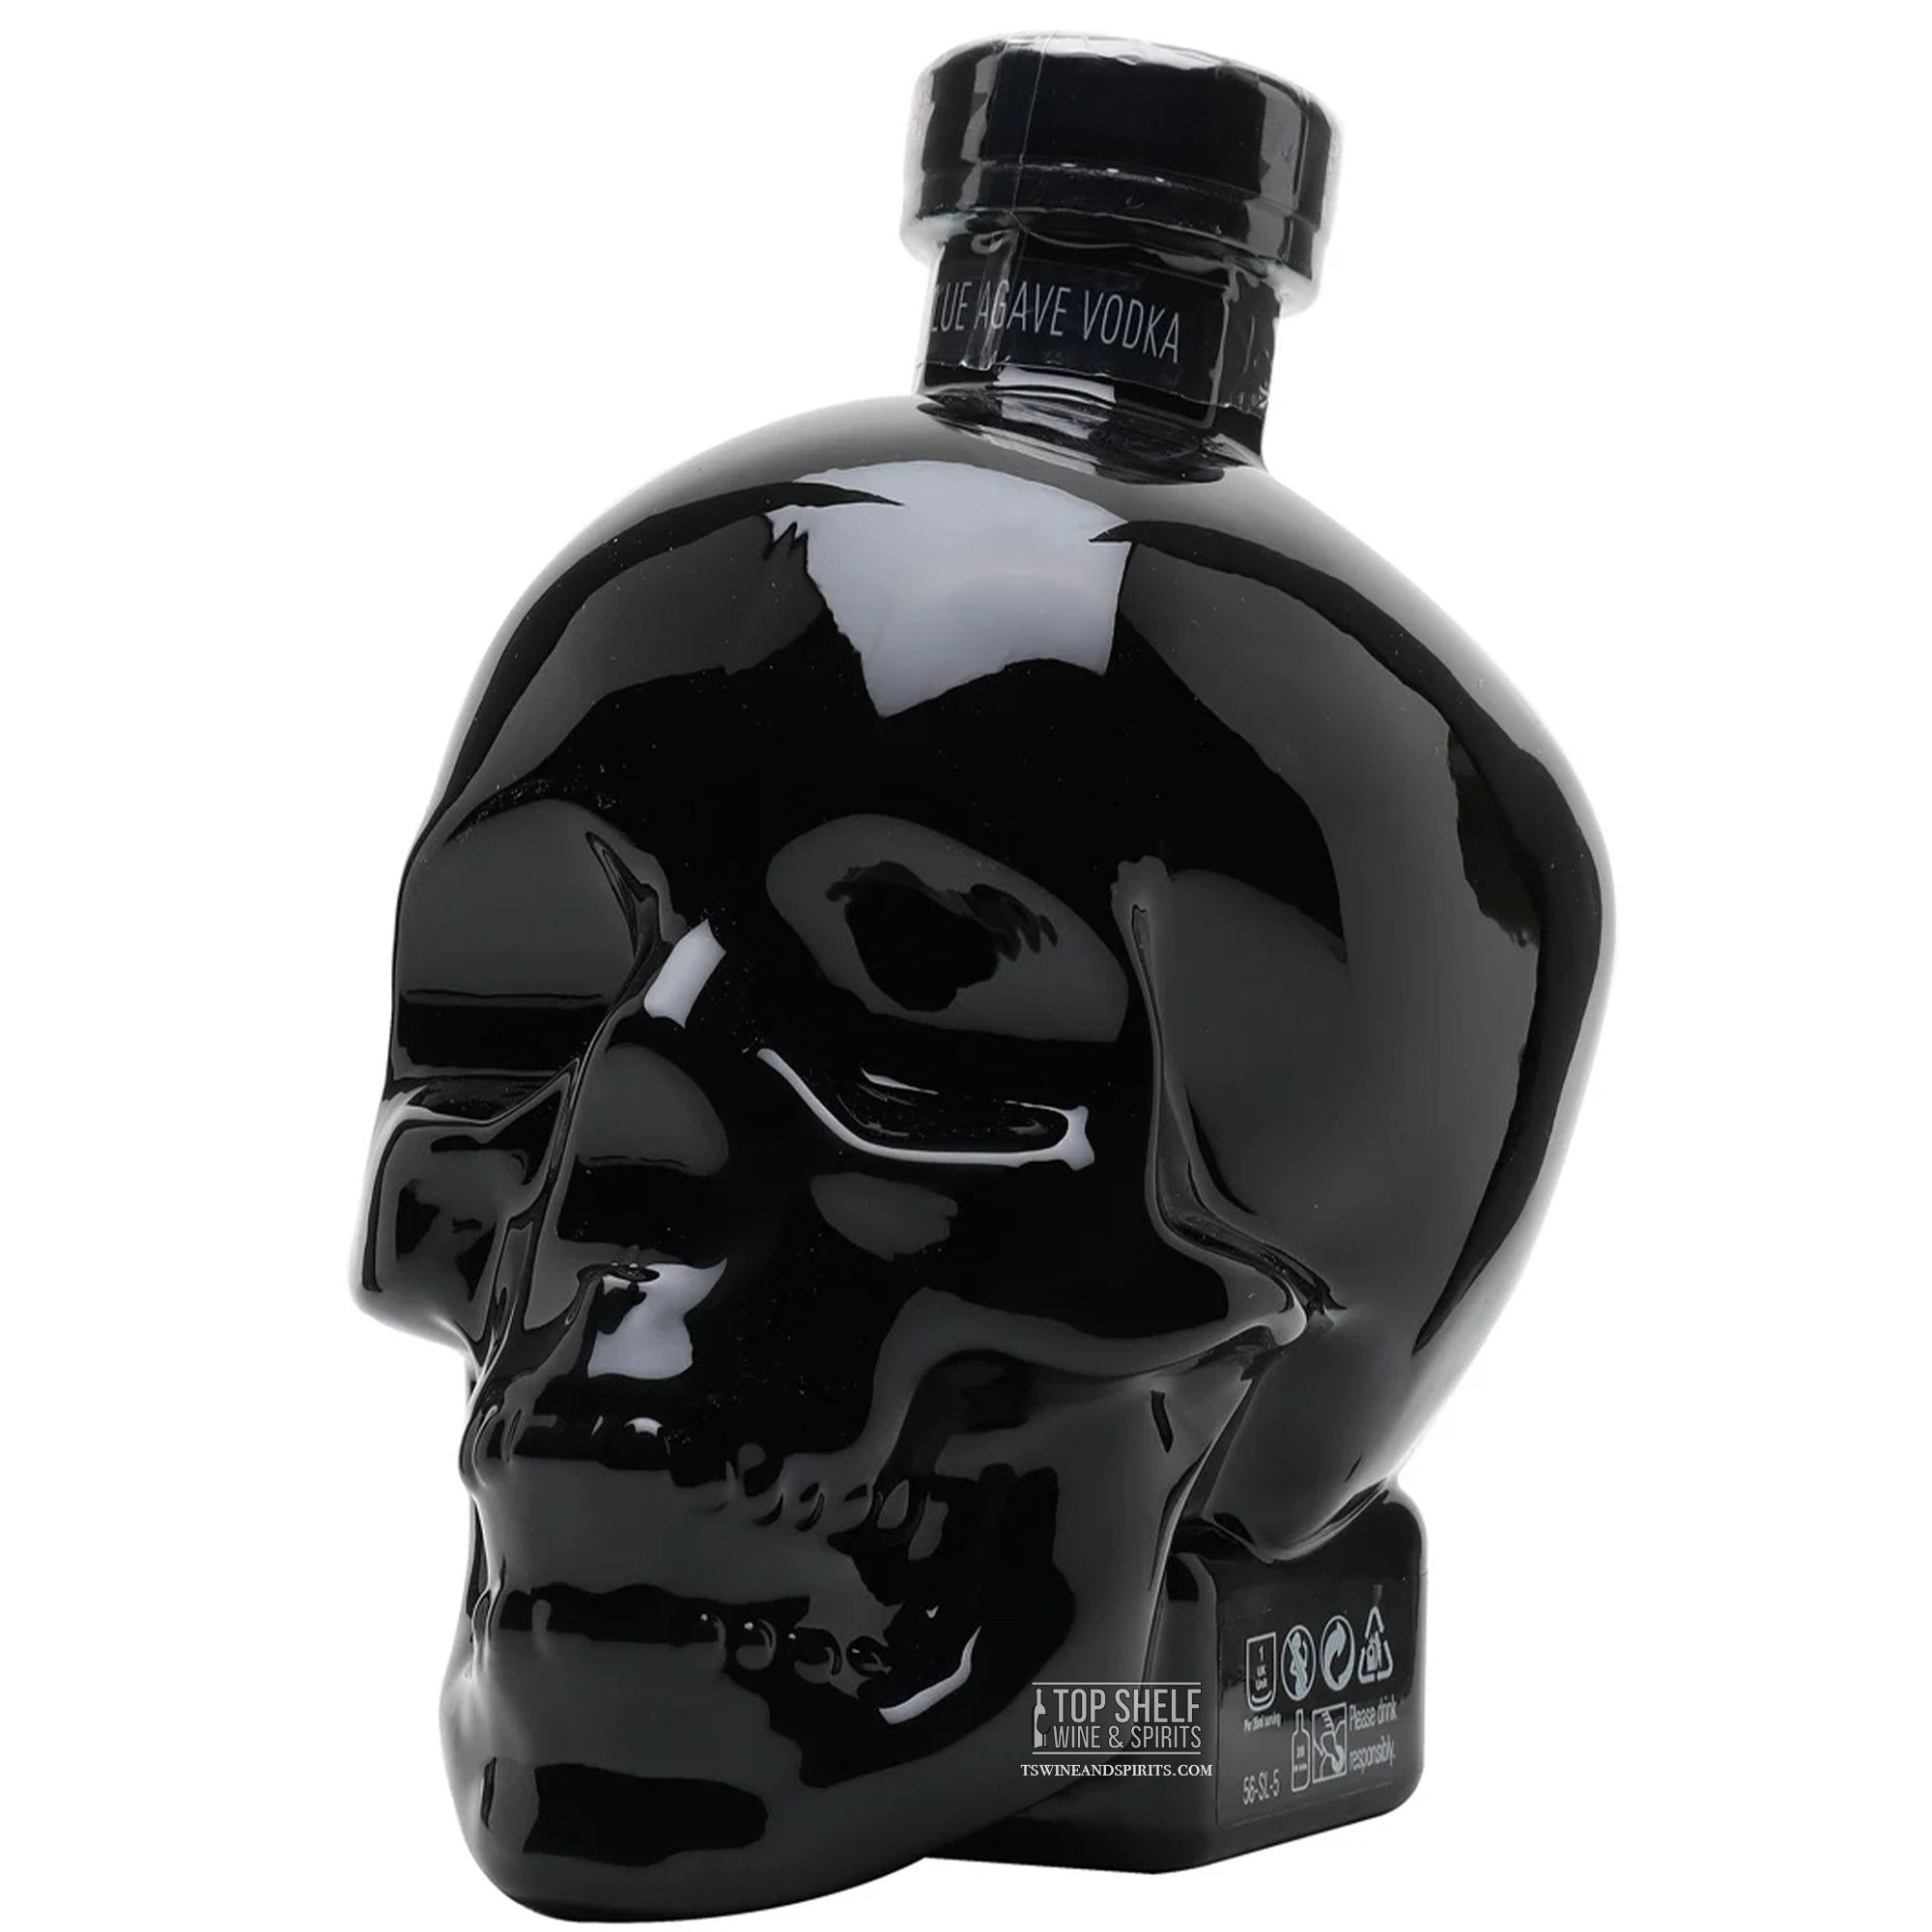 Black Onyx Vodka